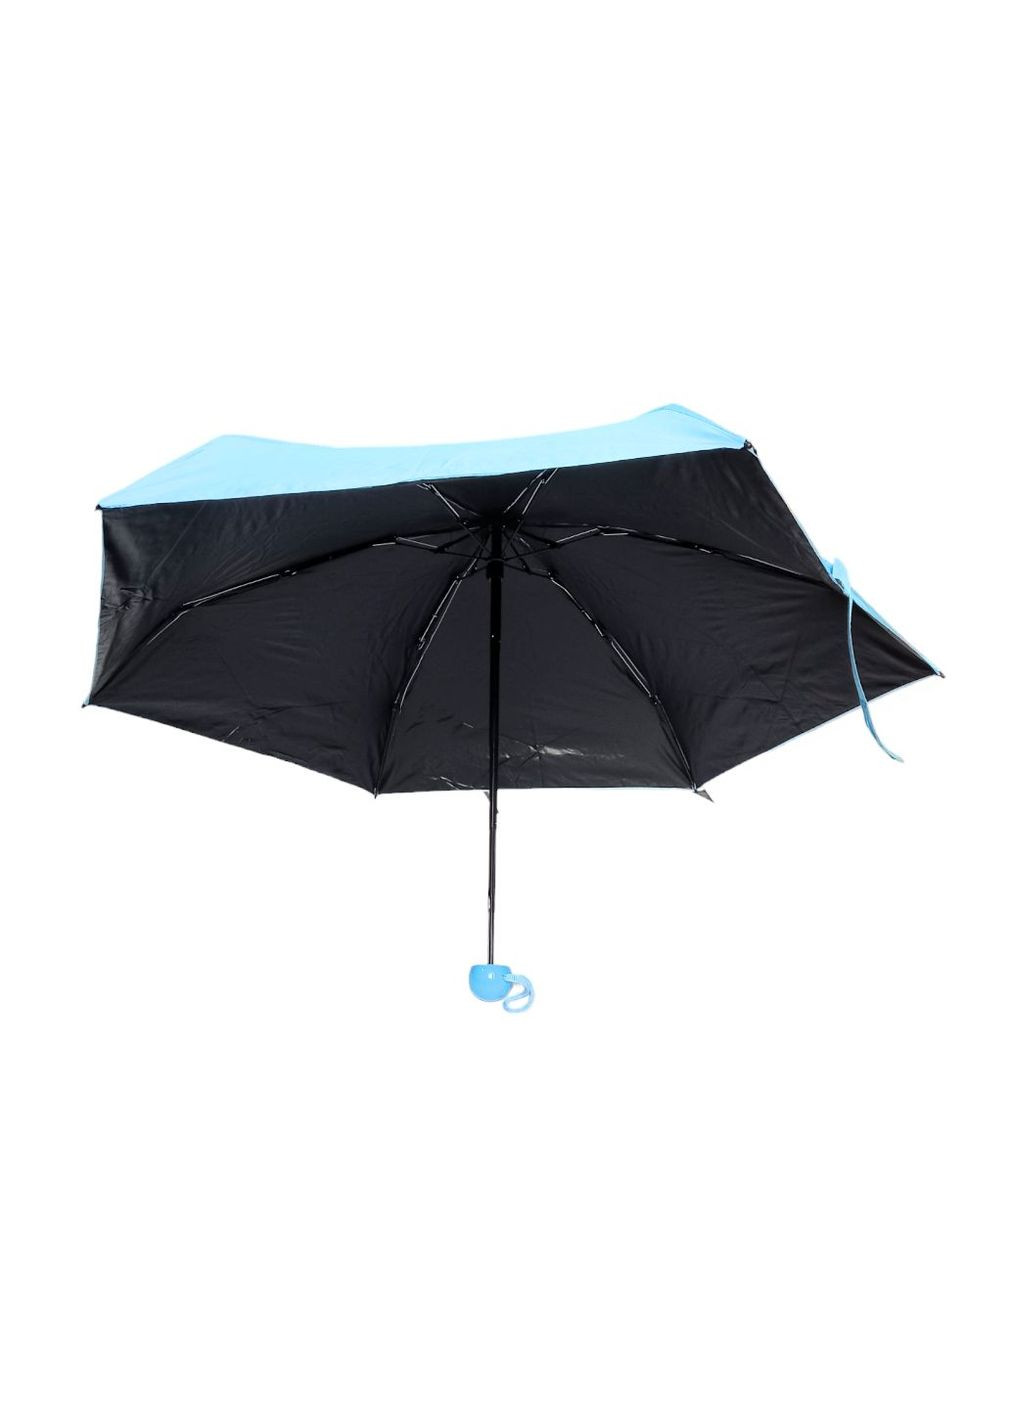 Зонт в капсуле футляре раскладной 90 х 90 х 50 см женский голубой мини карманный зонтик No Brand (270016427)